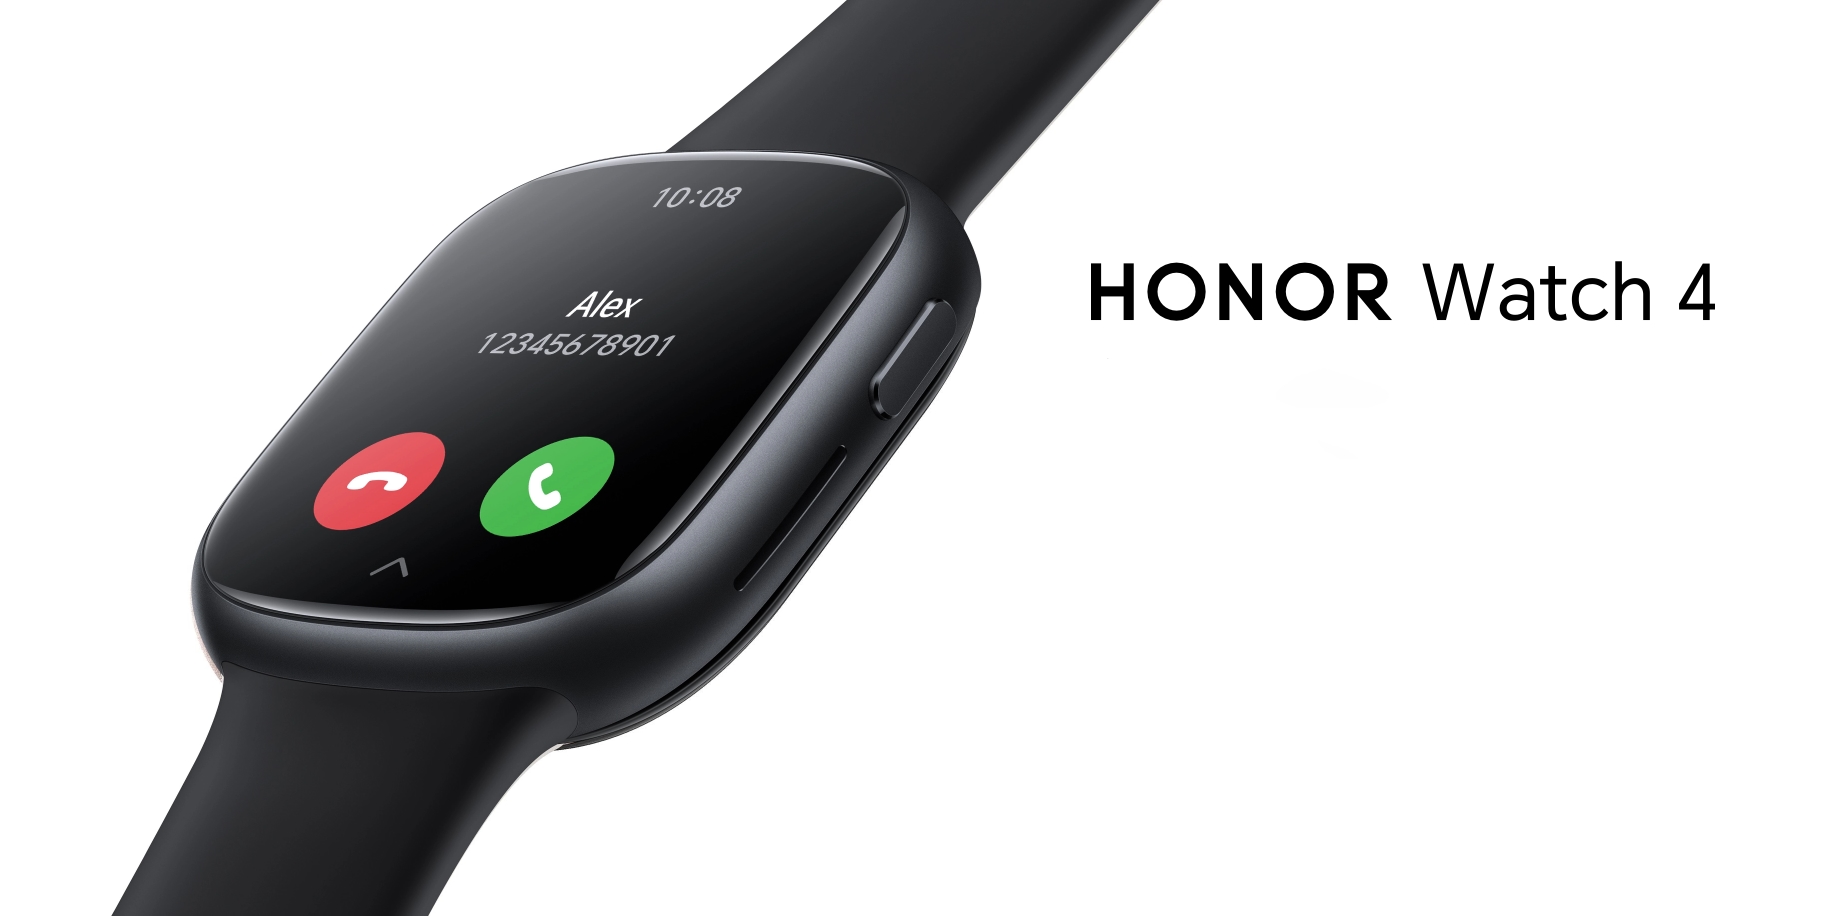 La Honor Watch 4 avec écran AMOLED, GPS et jusqu'à 14 jours d'autonomie est présentée en Europe